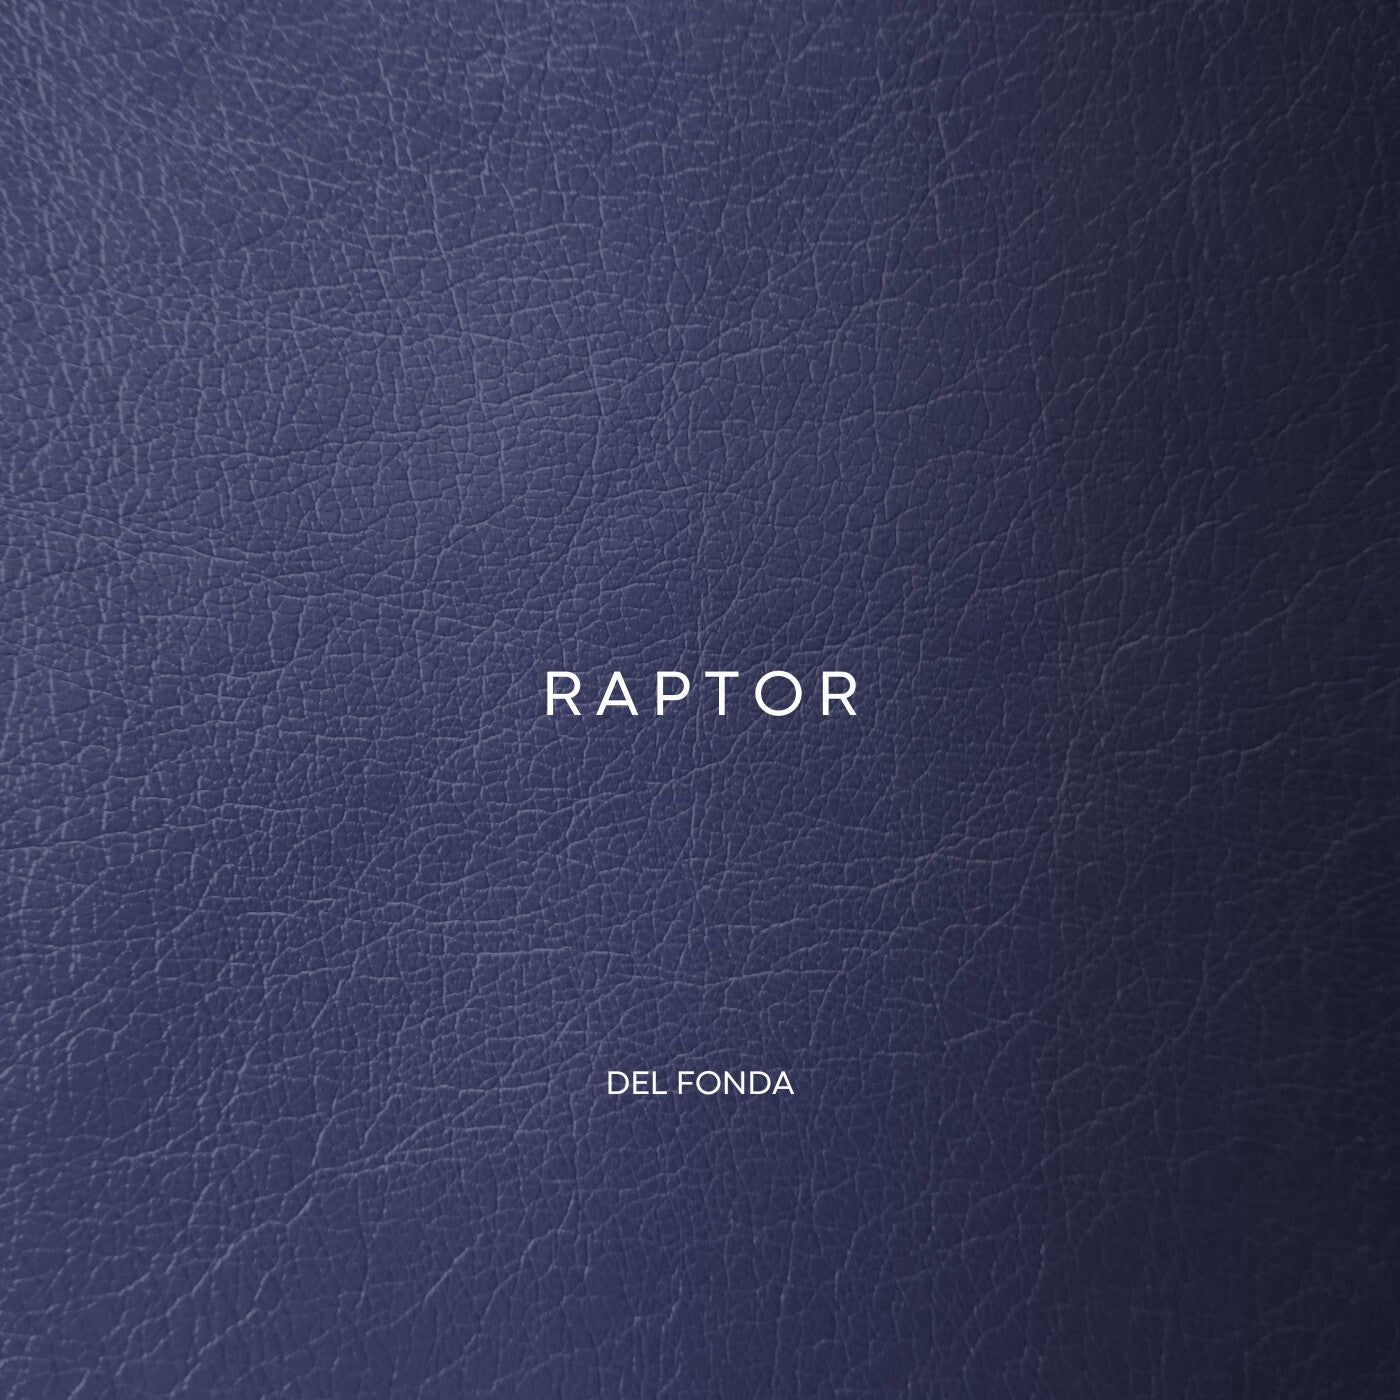 Cover - Del Fonda - Raptor (Original Mix)